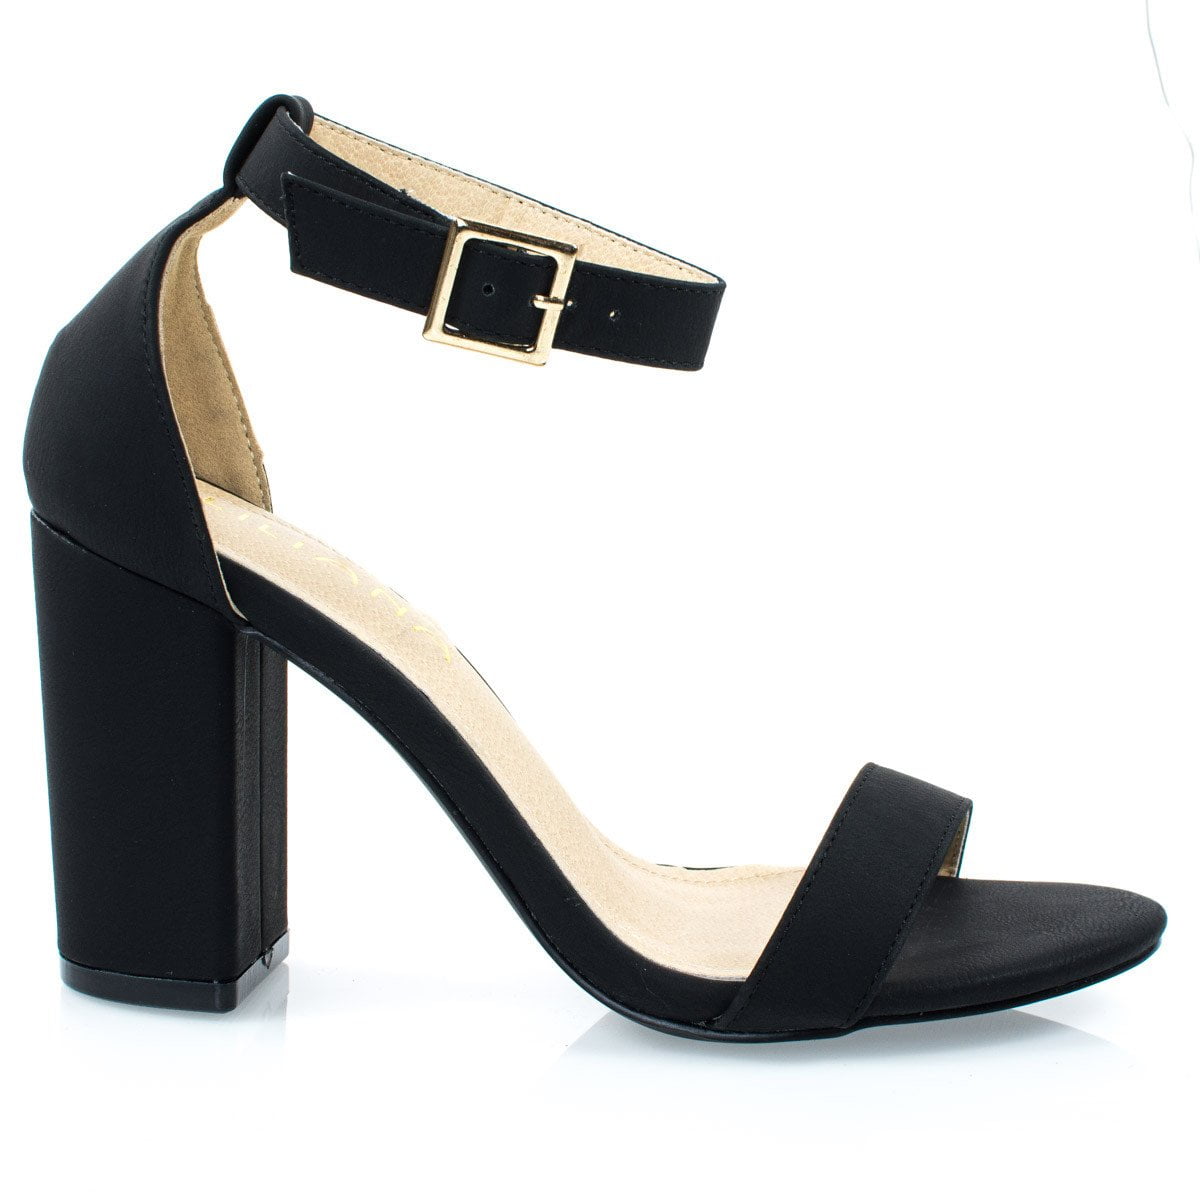 black open toe block heels